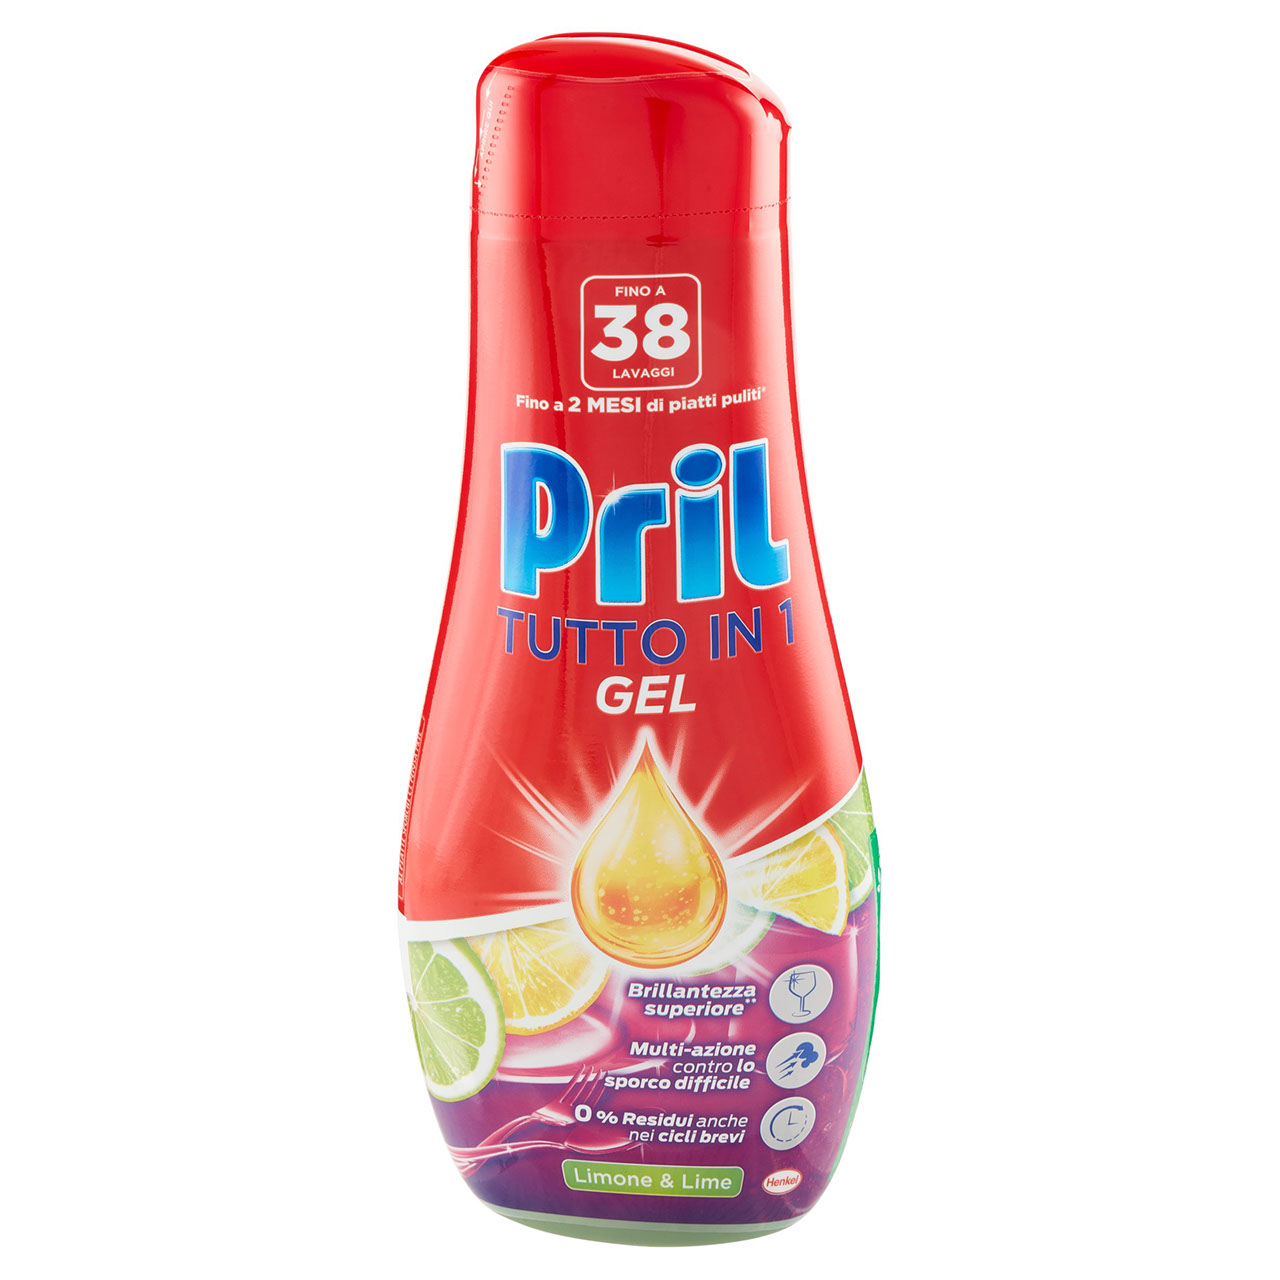 PRIL All in 1 Gel Limone 684ml 38lav.